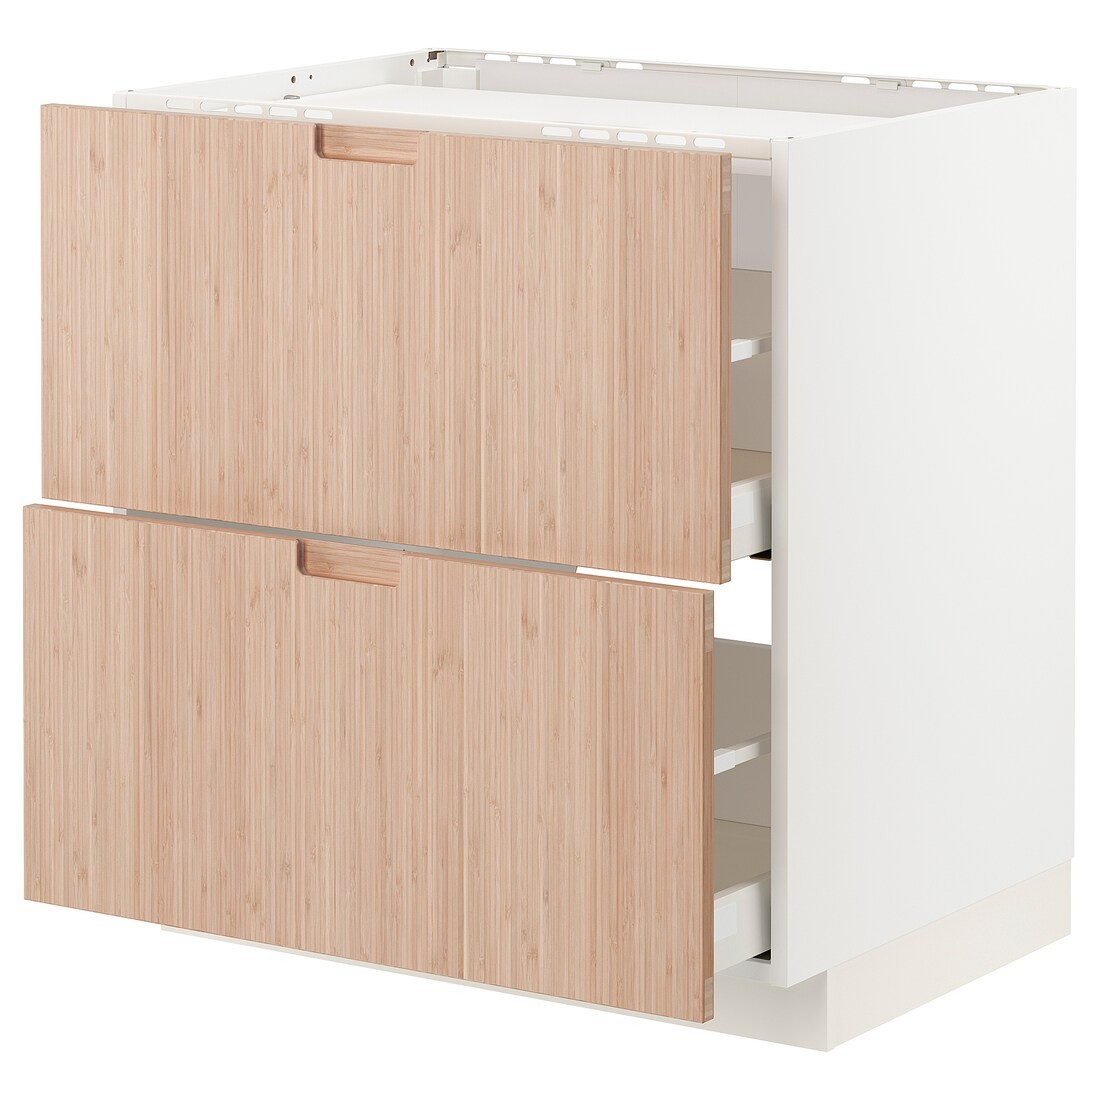 IKEA METOD МЕТОД / MAXIMERA МАКСИМЕРА Напольный шкаф с ящиками, белый / Fröjered светлый бамбук, 80x60 см 79330253 793.302.53